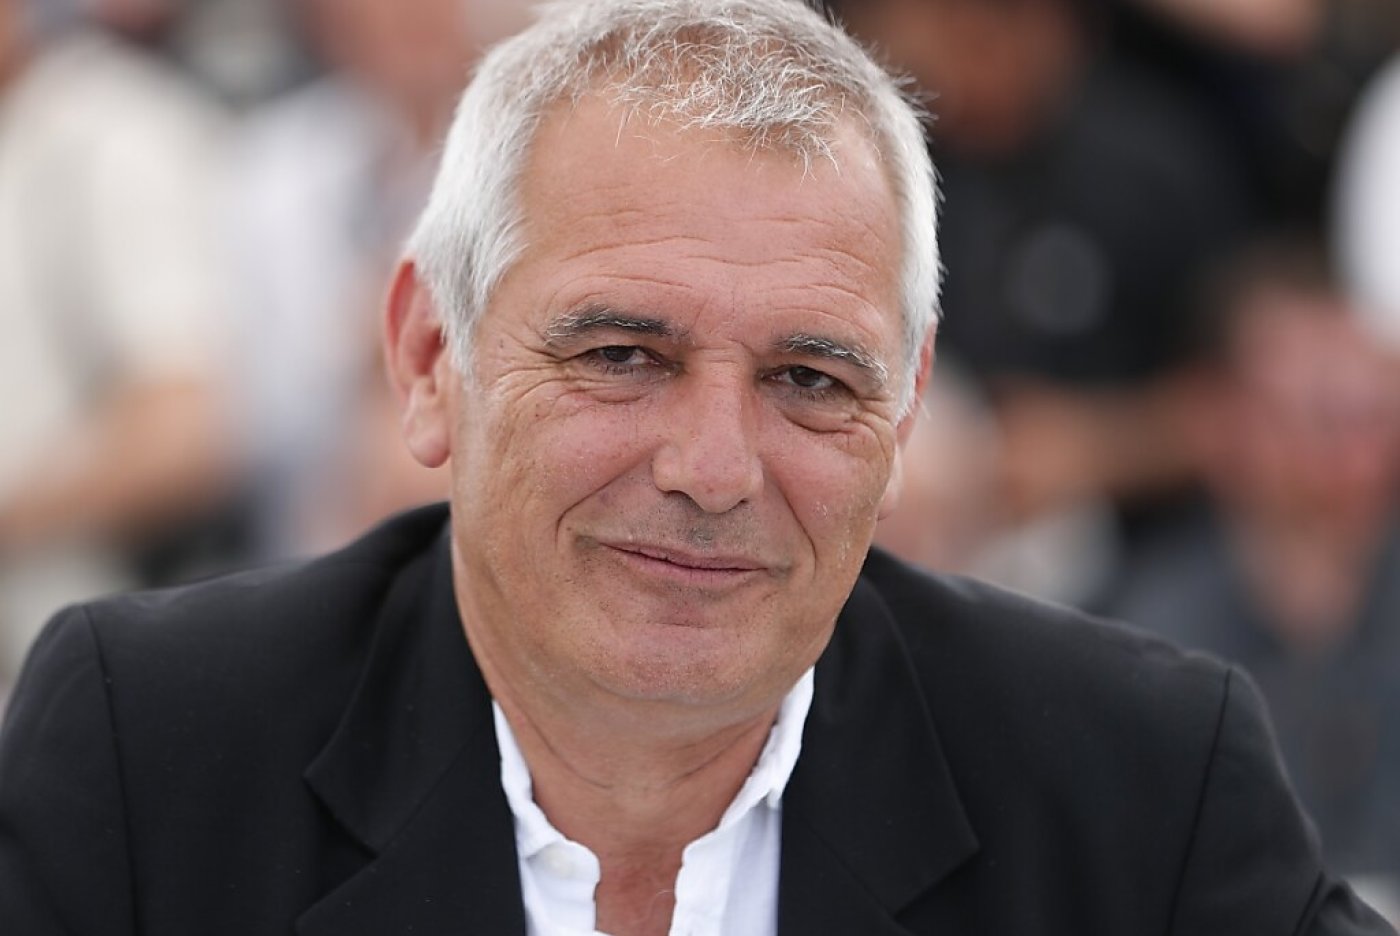 Réalisateur discret à la fibre sociale assumée, Laurent Cantet était entré dans la légende de Cannes en 2008 en recevant la Palme d'or pour "Entre les murs". Ici, une image de 2017. (archives) KEYSTONE